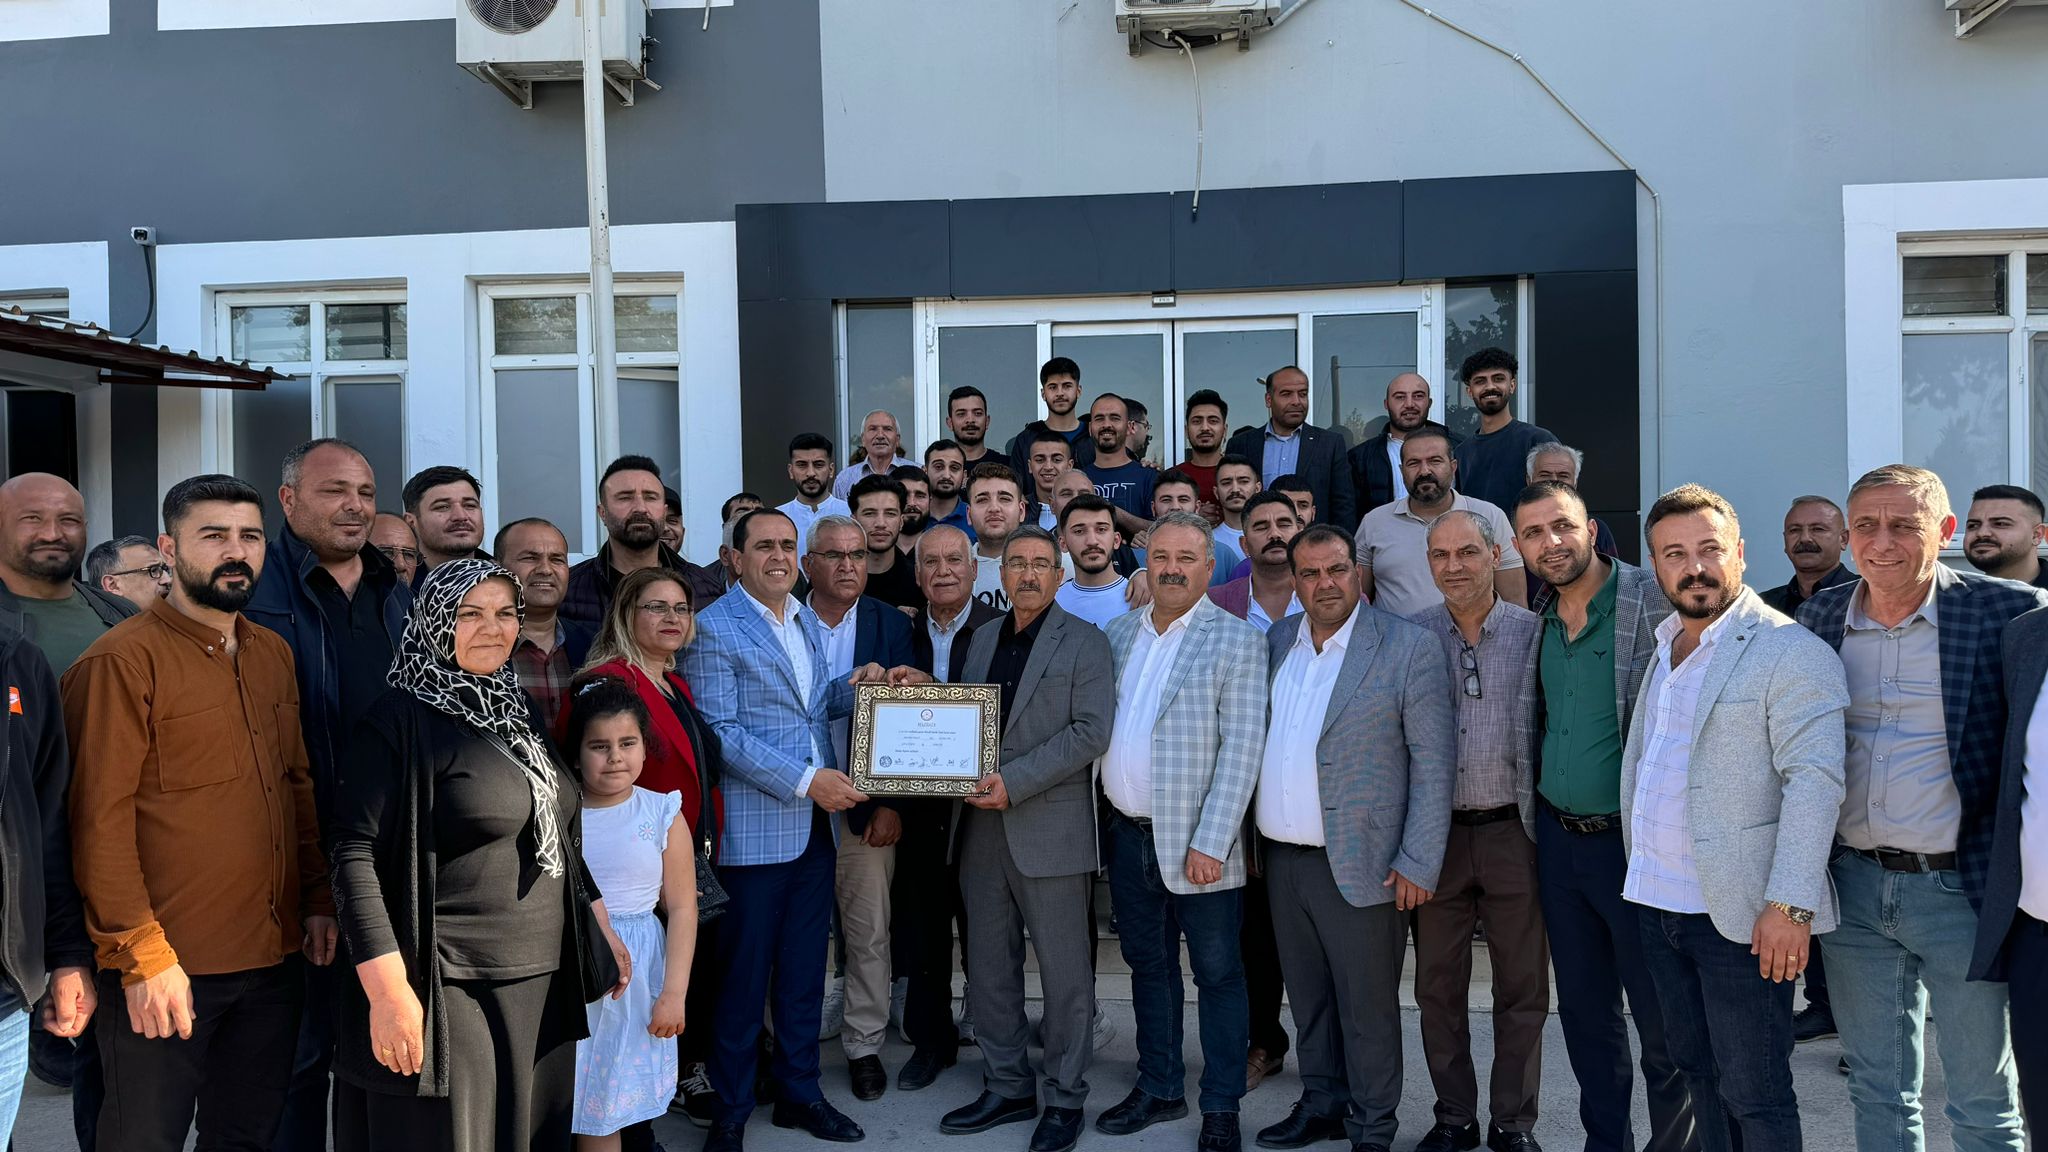 Birecik Belediye Başkanı Mehmet Beğit Göreve Başladı: Birlikte Güzel Hizmetlere İmza Atacaklar